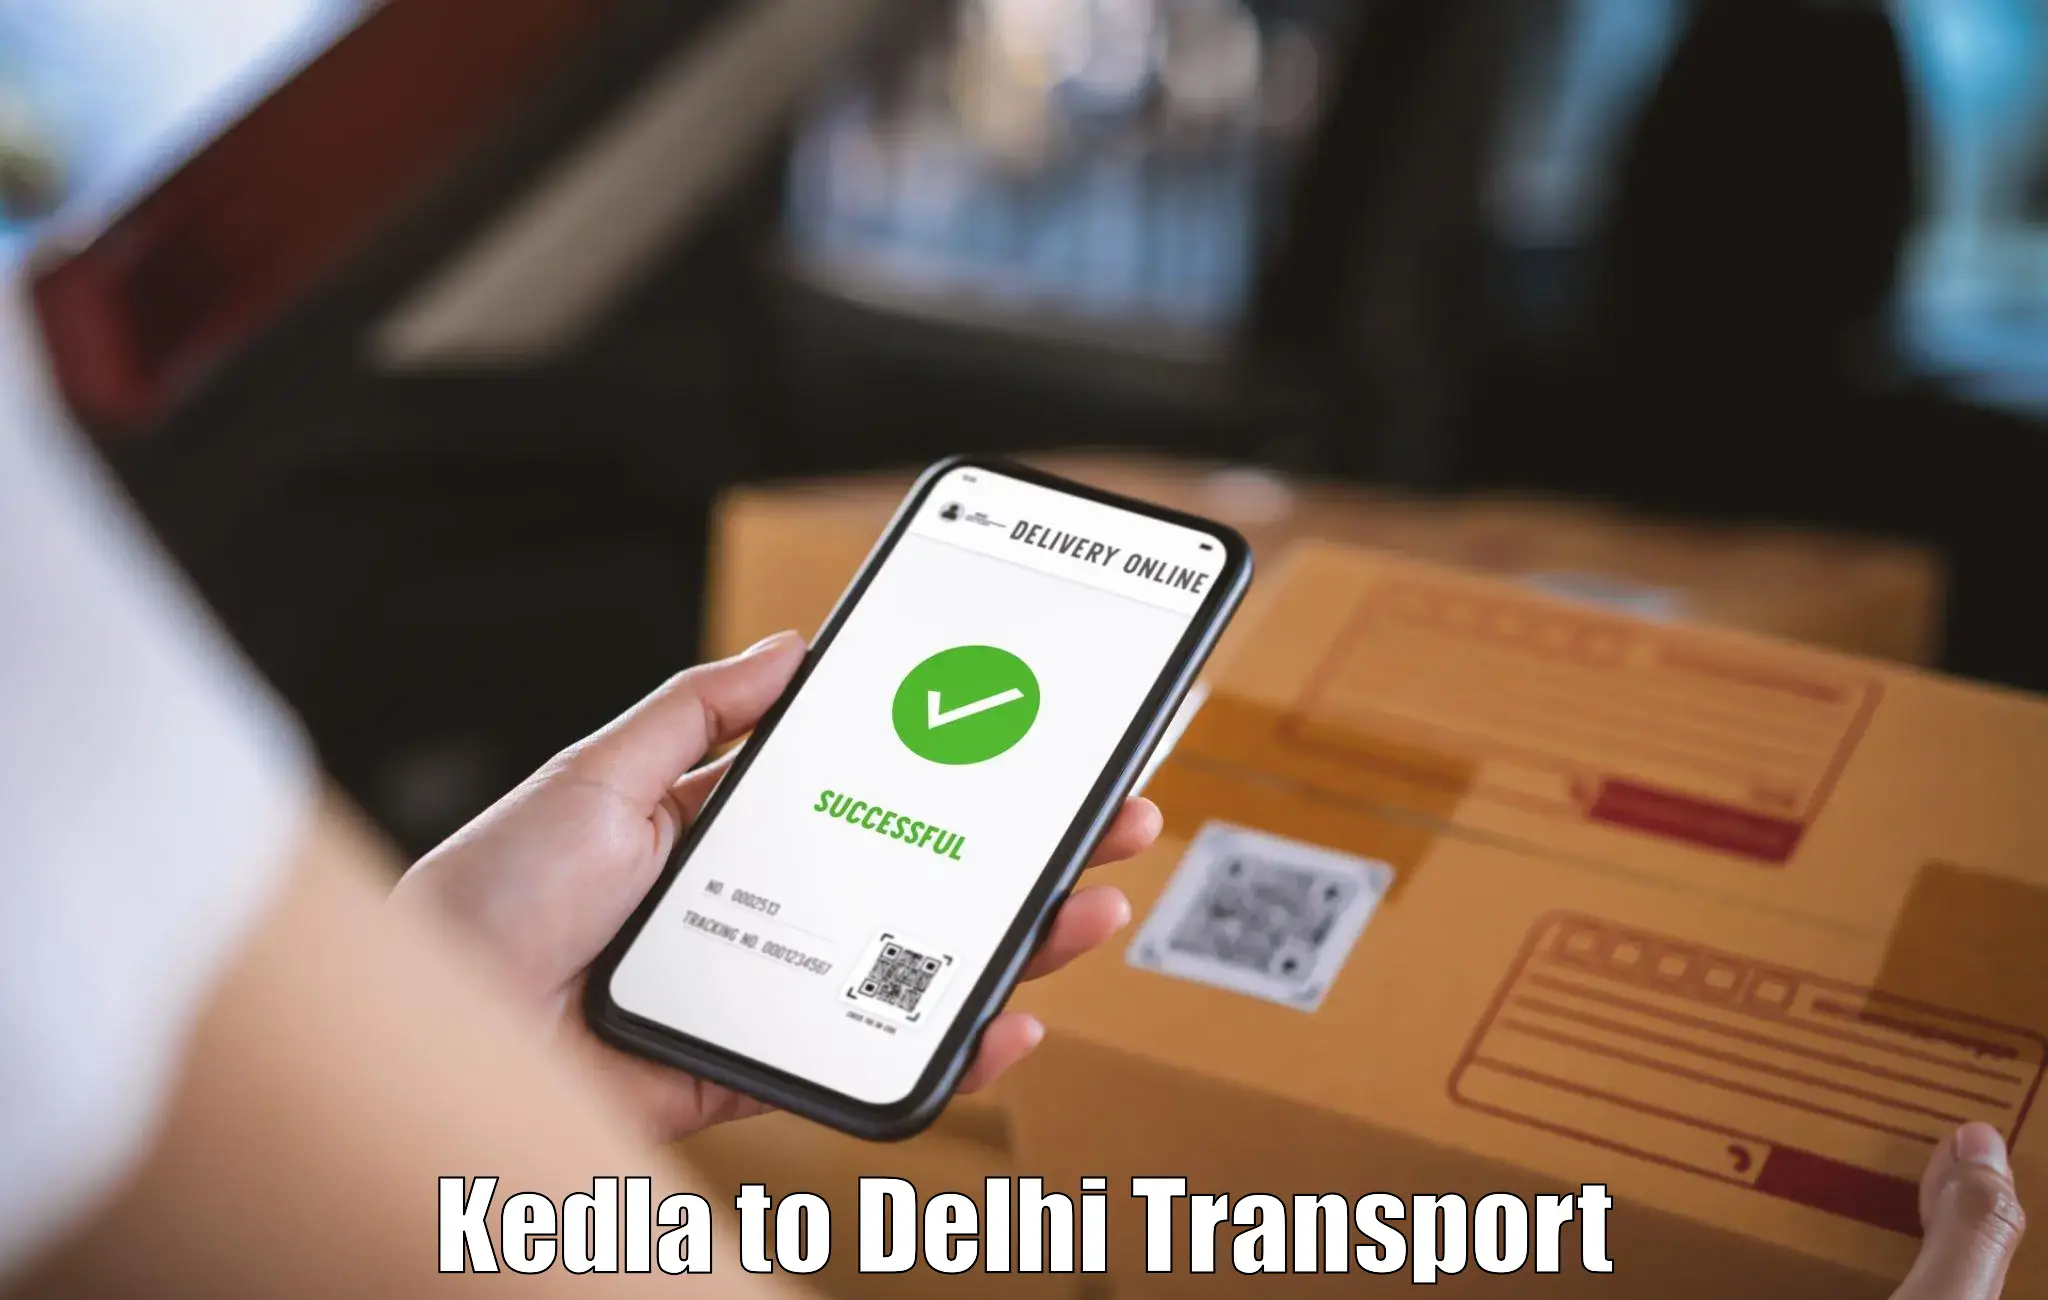 Cargo transportation services Kedla to Delhi